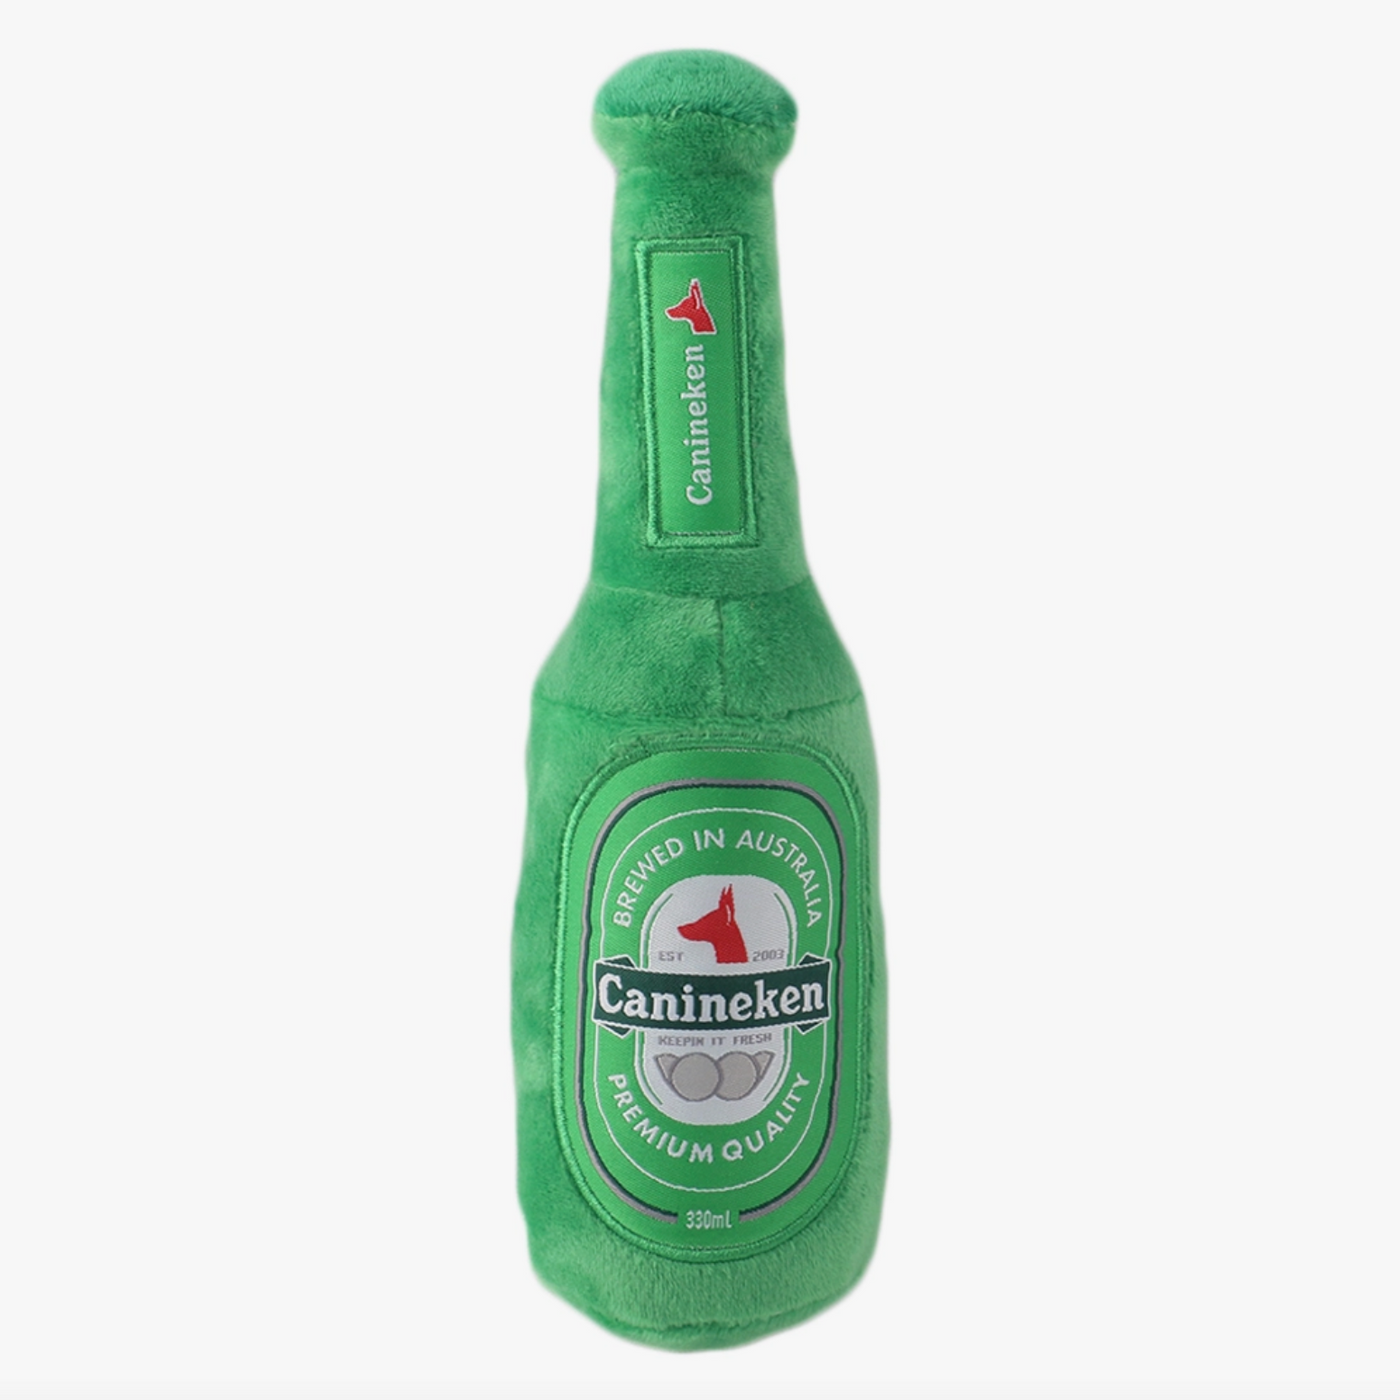 Canineken Beer Bottle Toy